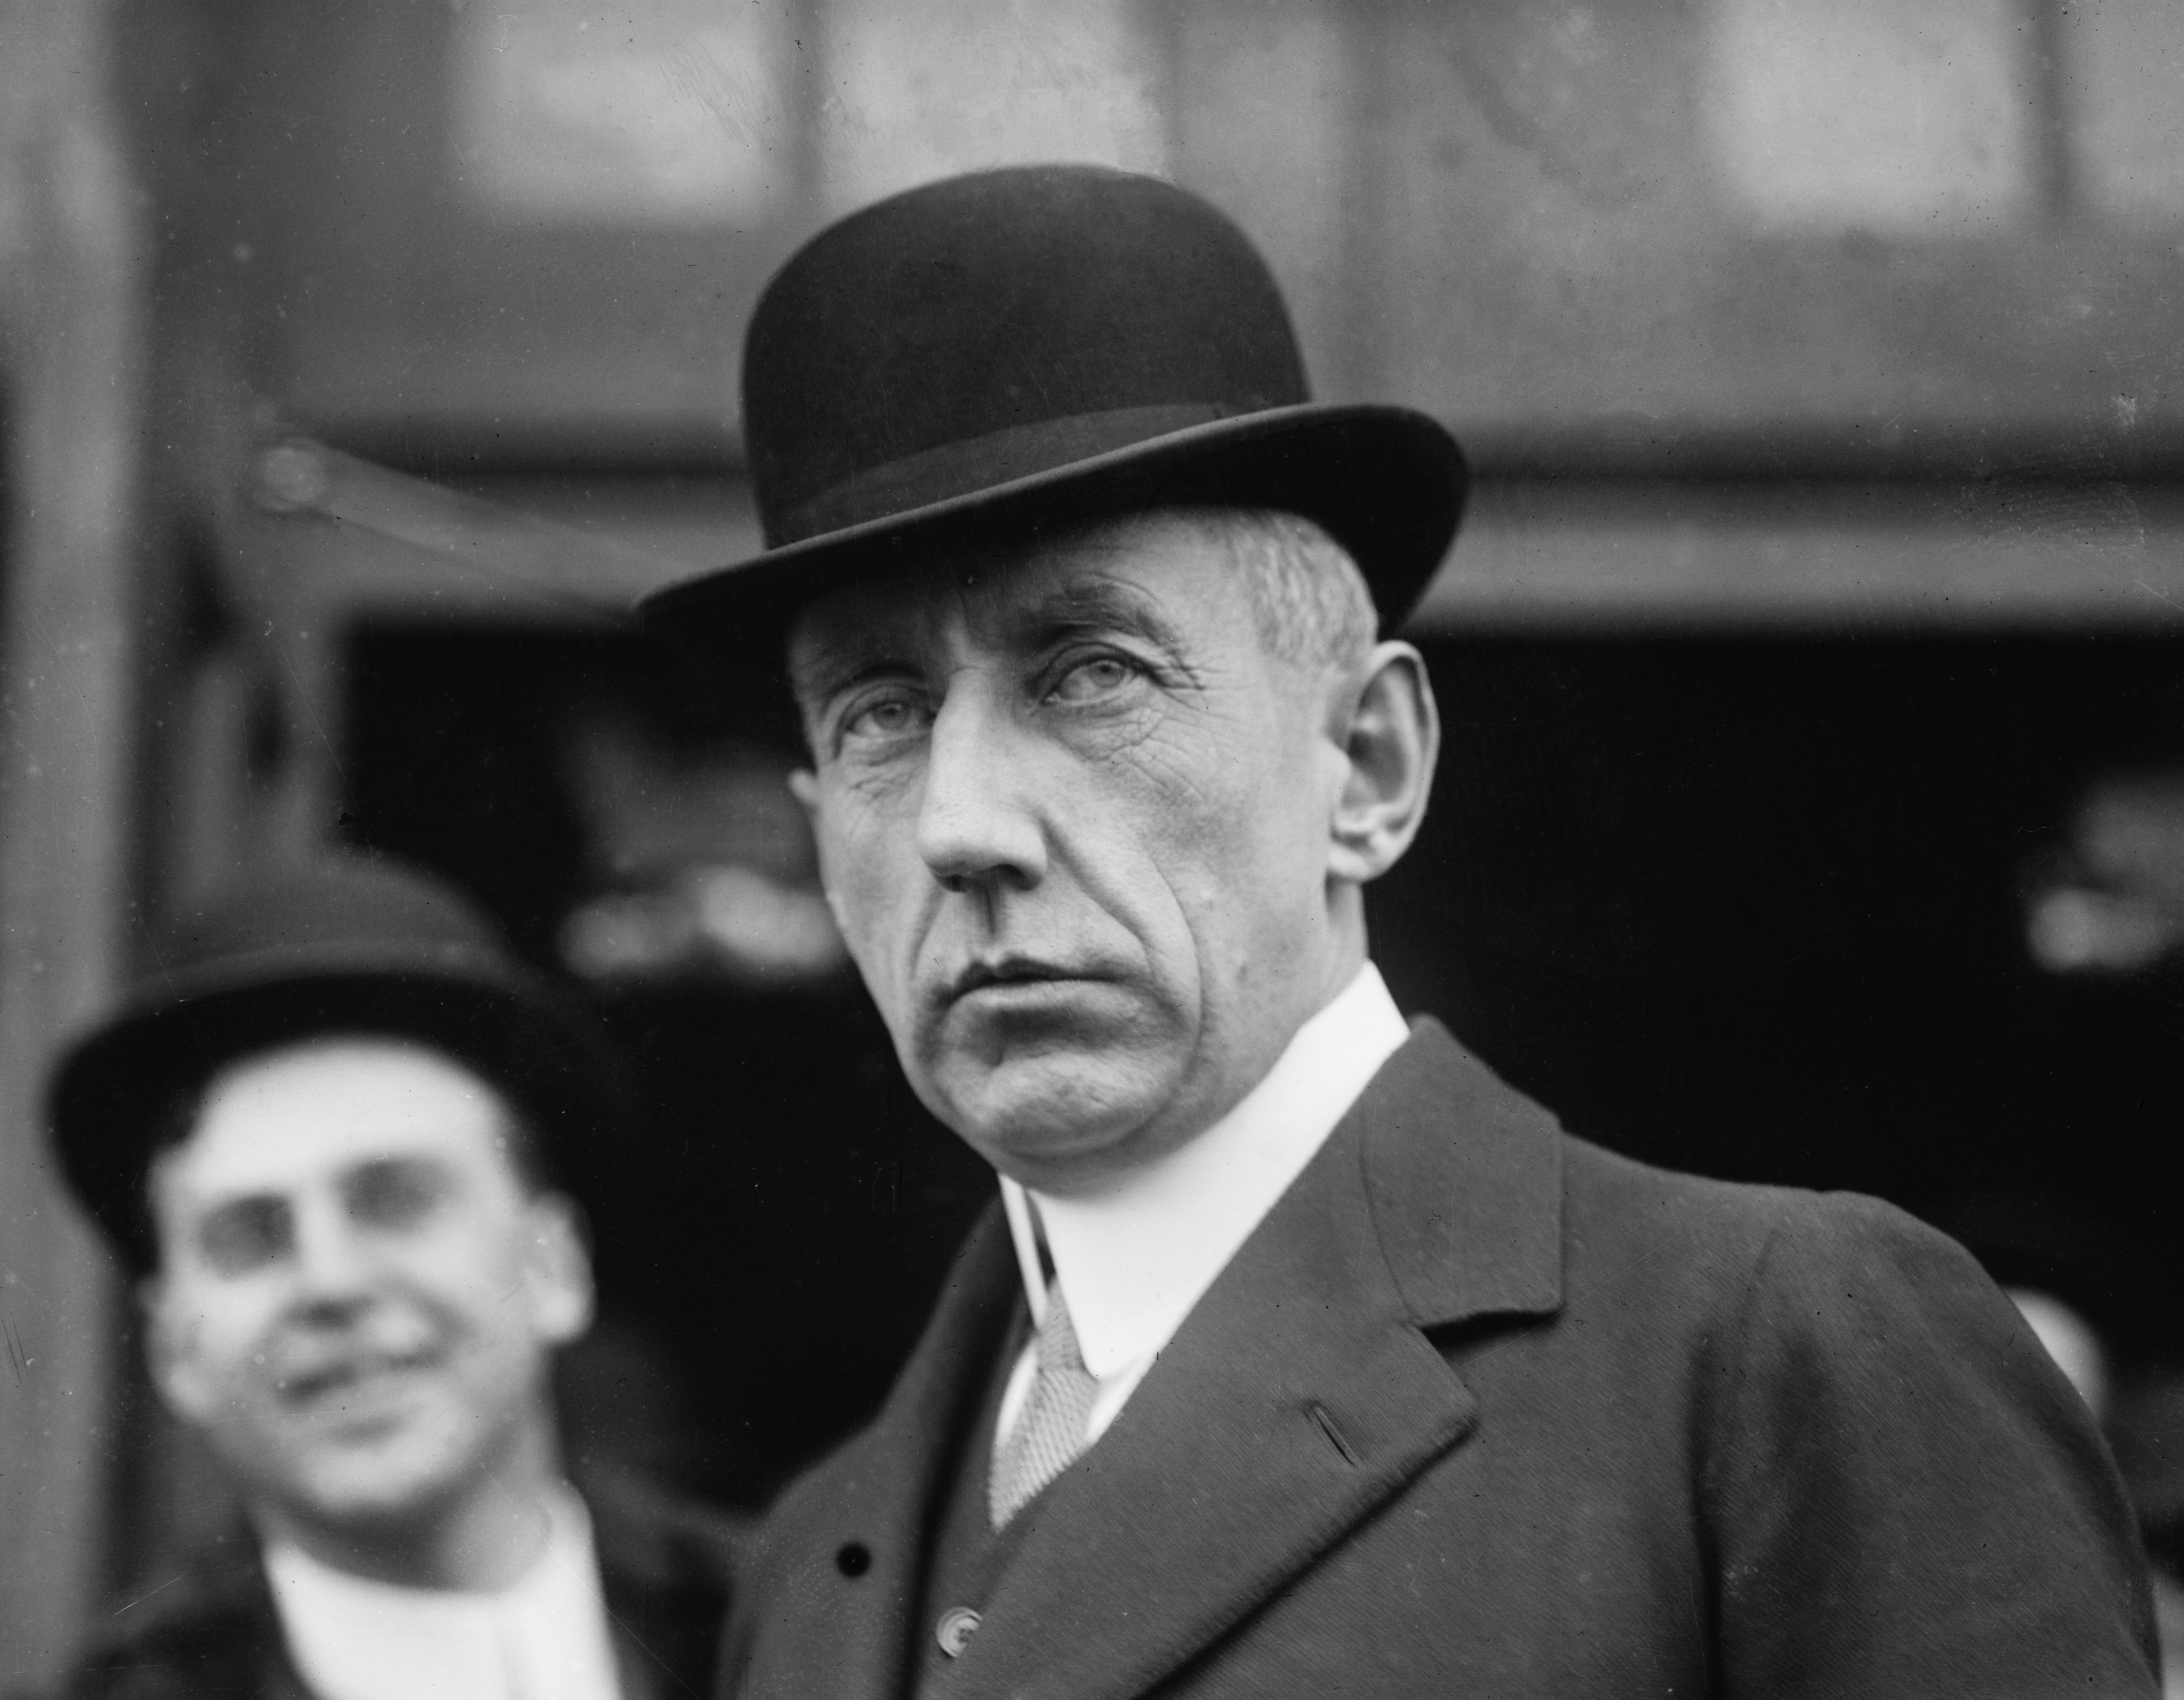 Roald Amundsen's quote